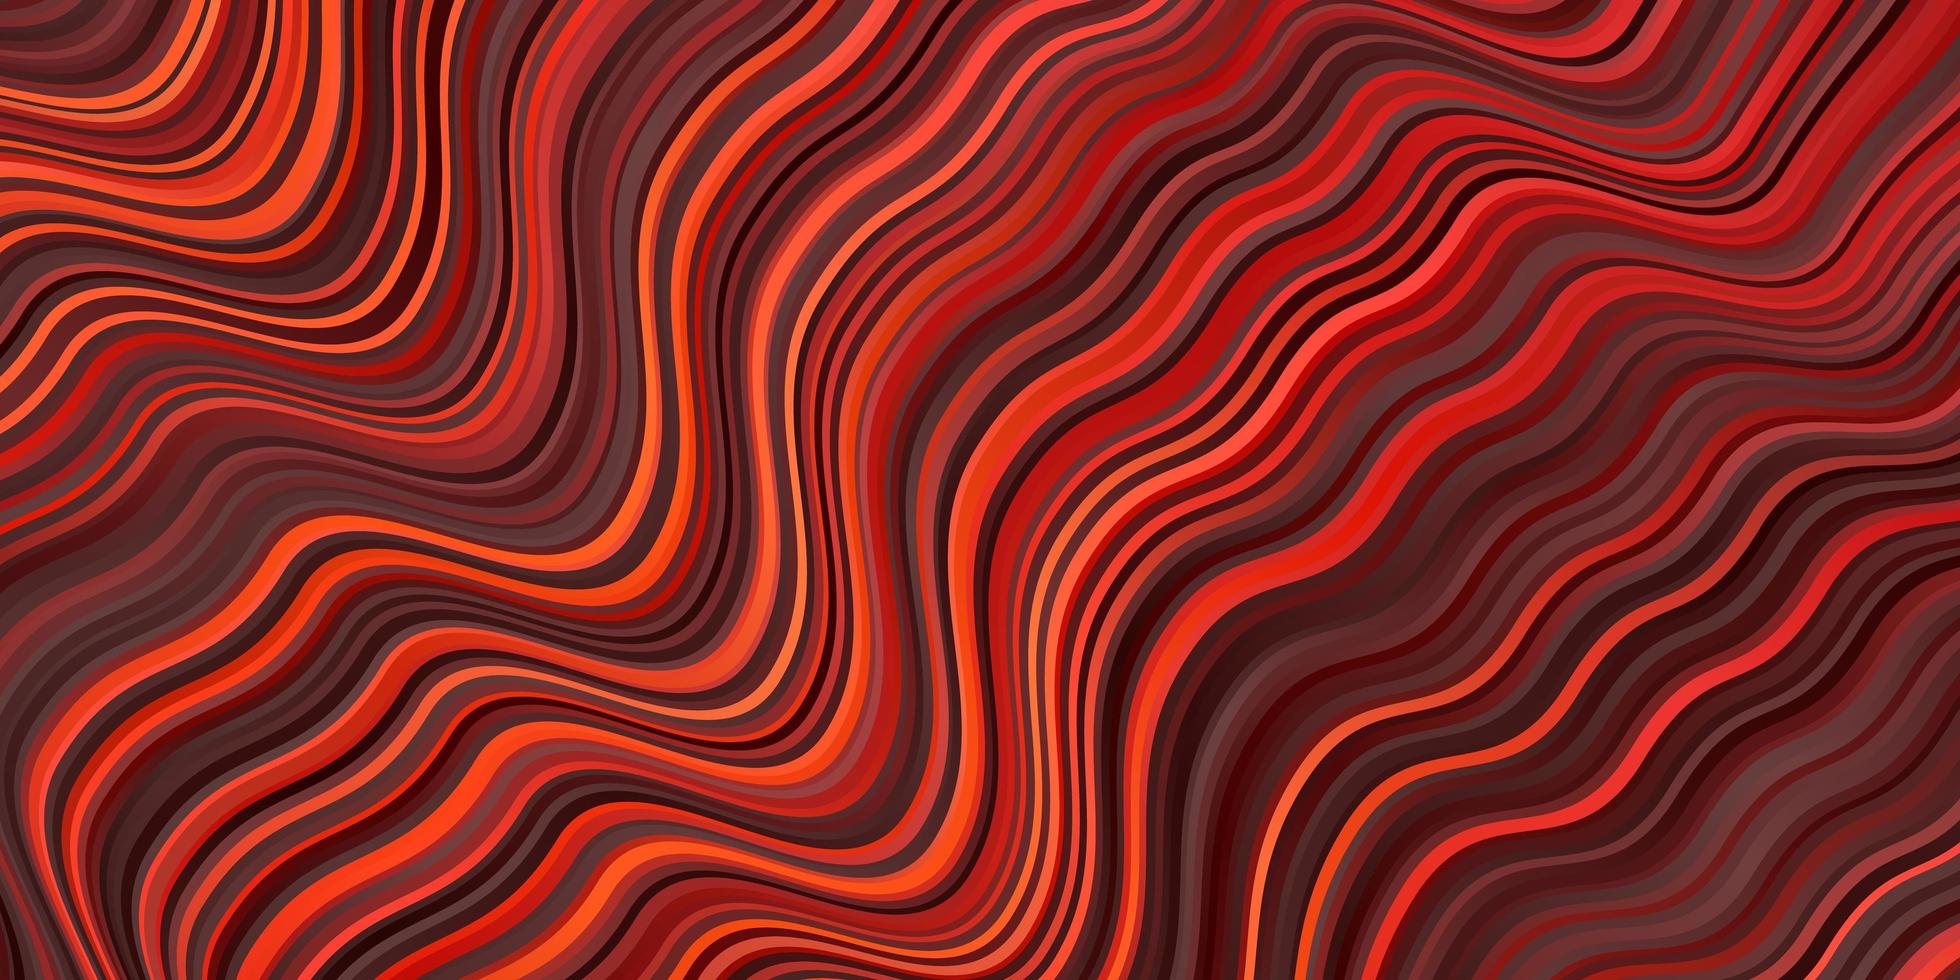 Plantilla de vector rojo oscuro con líneas torcidas Ilustración de degradado abstracto con plantilla de líneas torcidas para su diseño de interfaz de usuario